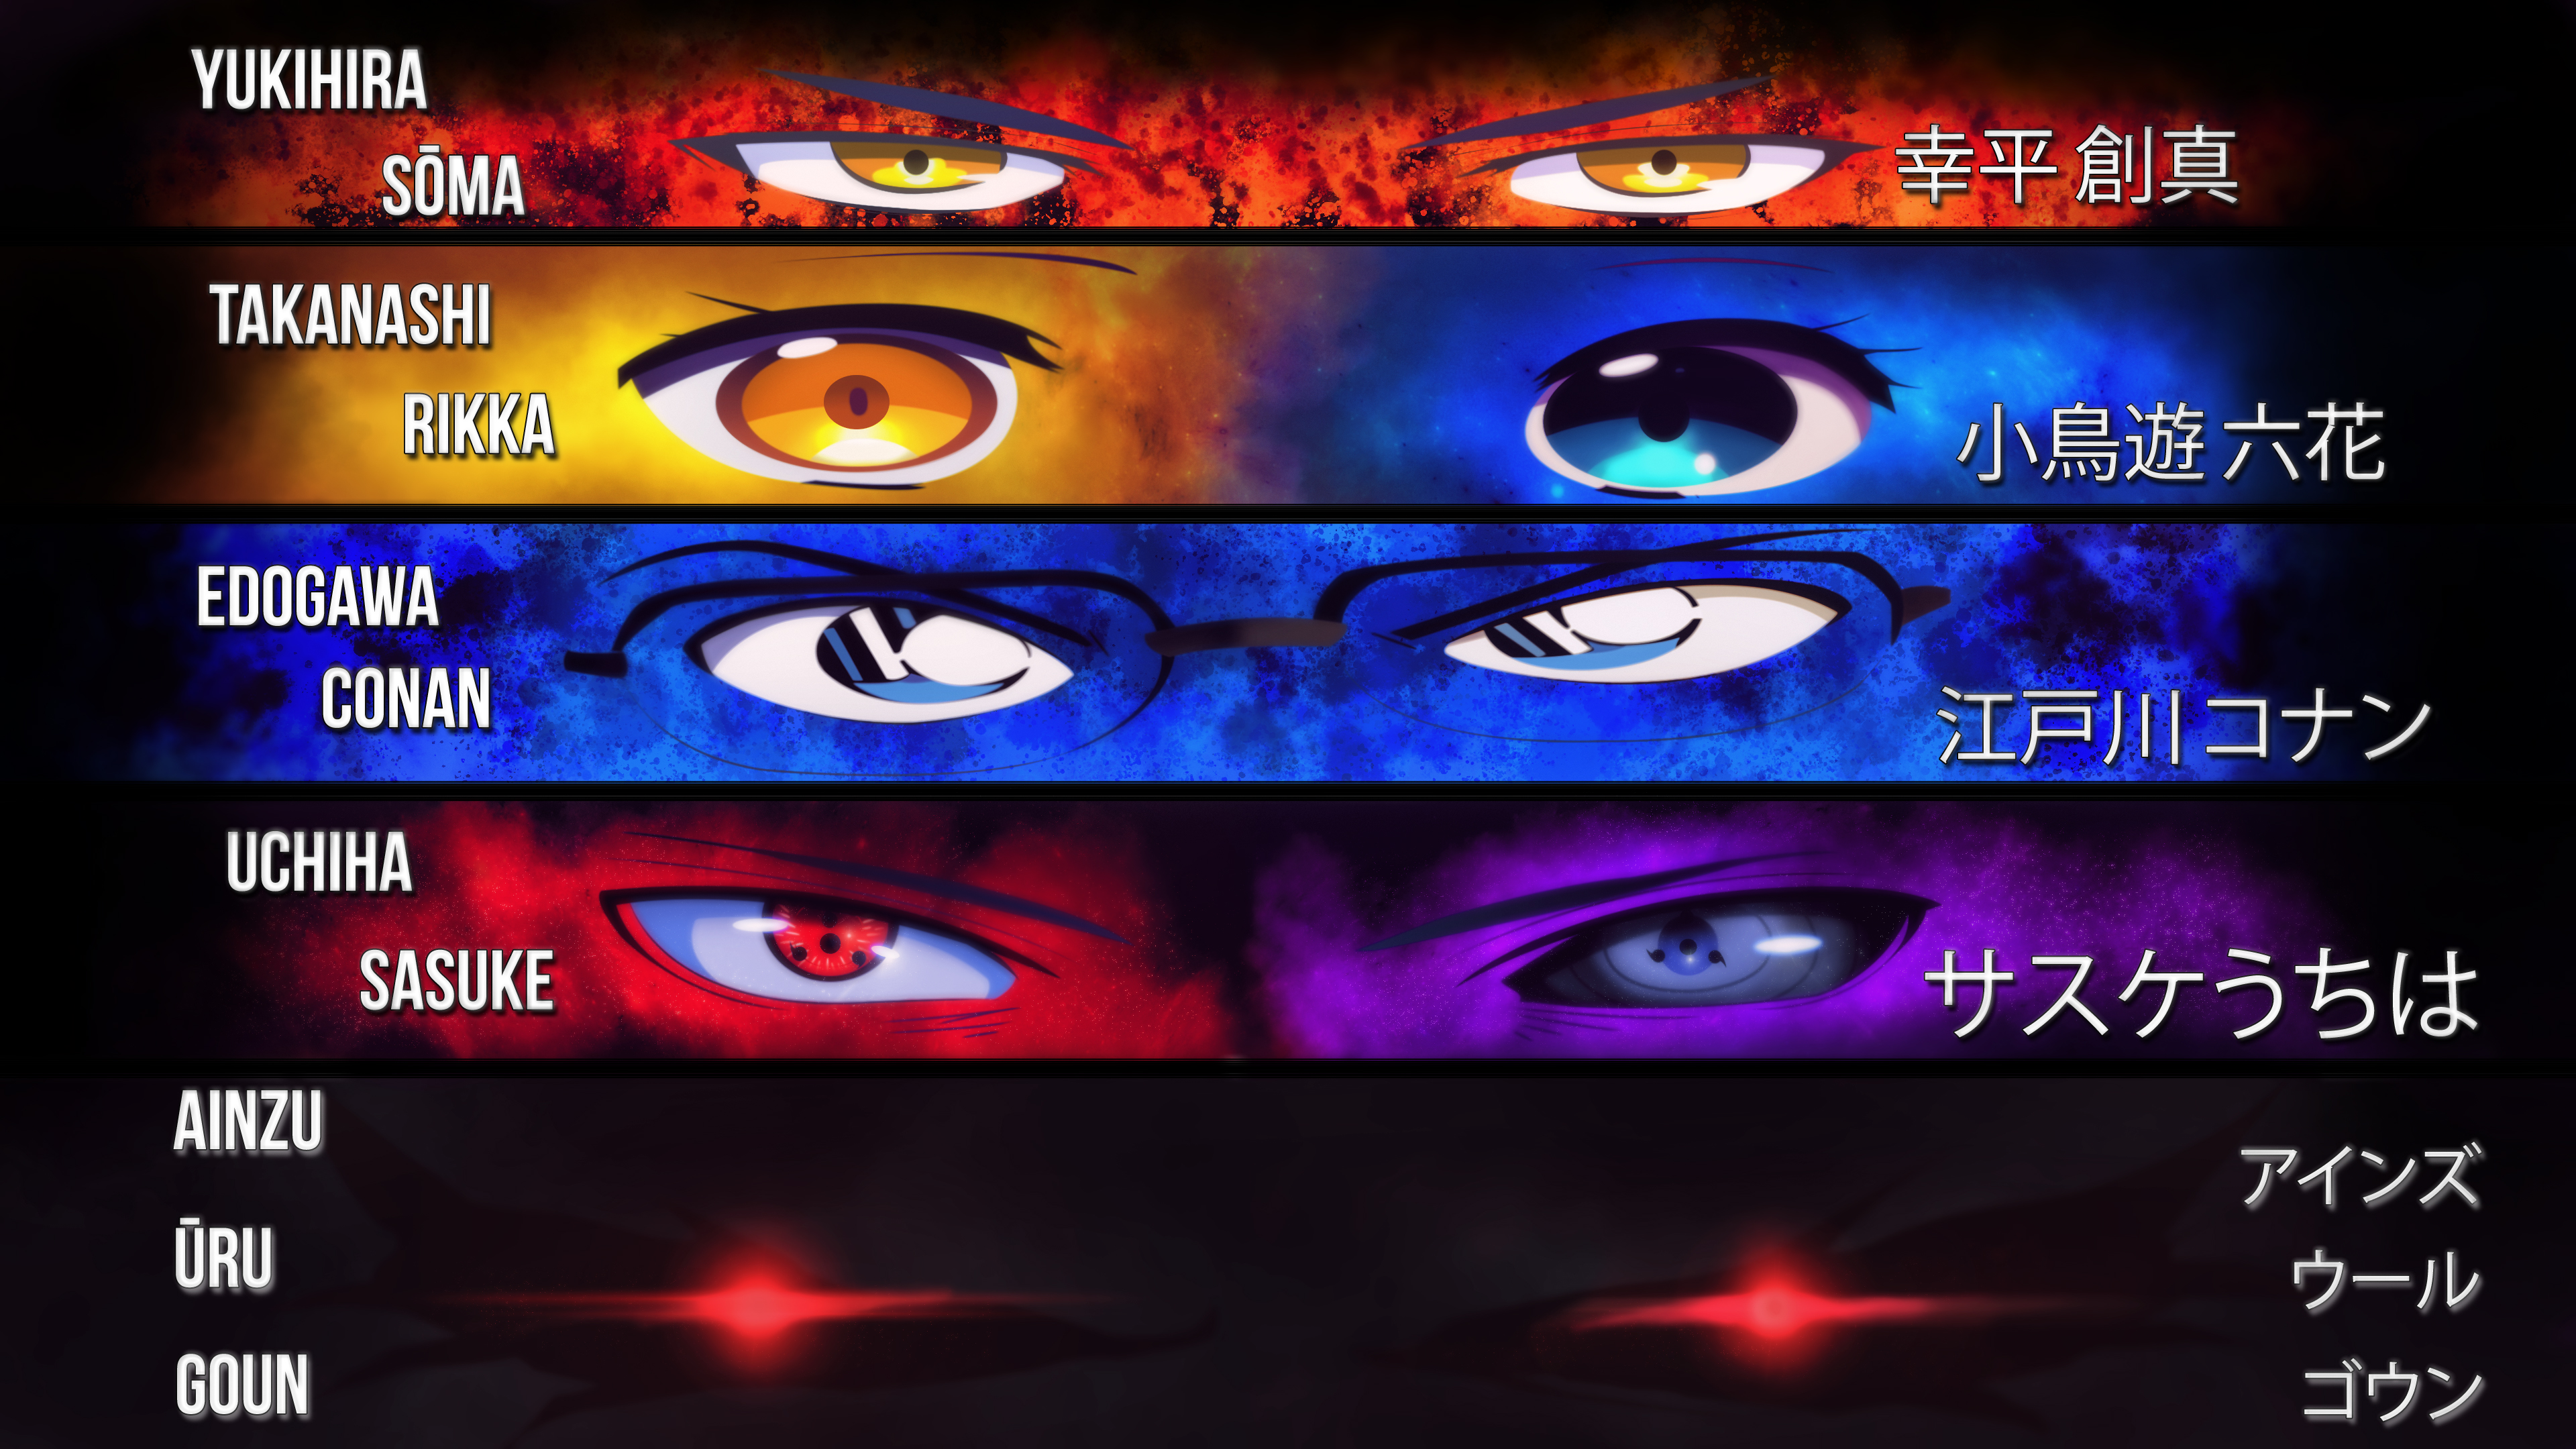 Anime 3840x2160 Uchiha Sasuke Detective Conan Yukihira Soma Takanashi Rikka Yu Yu Hakusho Naruto Shippuuden Shokugeki no Souma Chuunibyou demo Koi ga Shitai! eyes anime